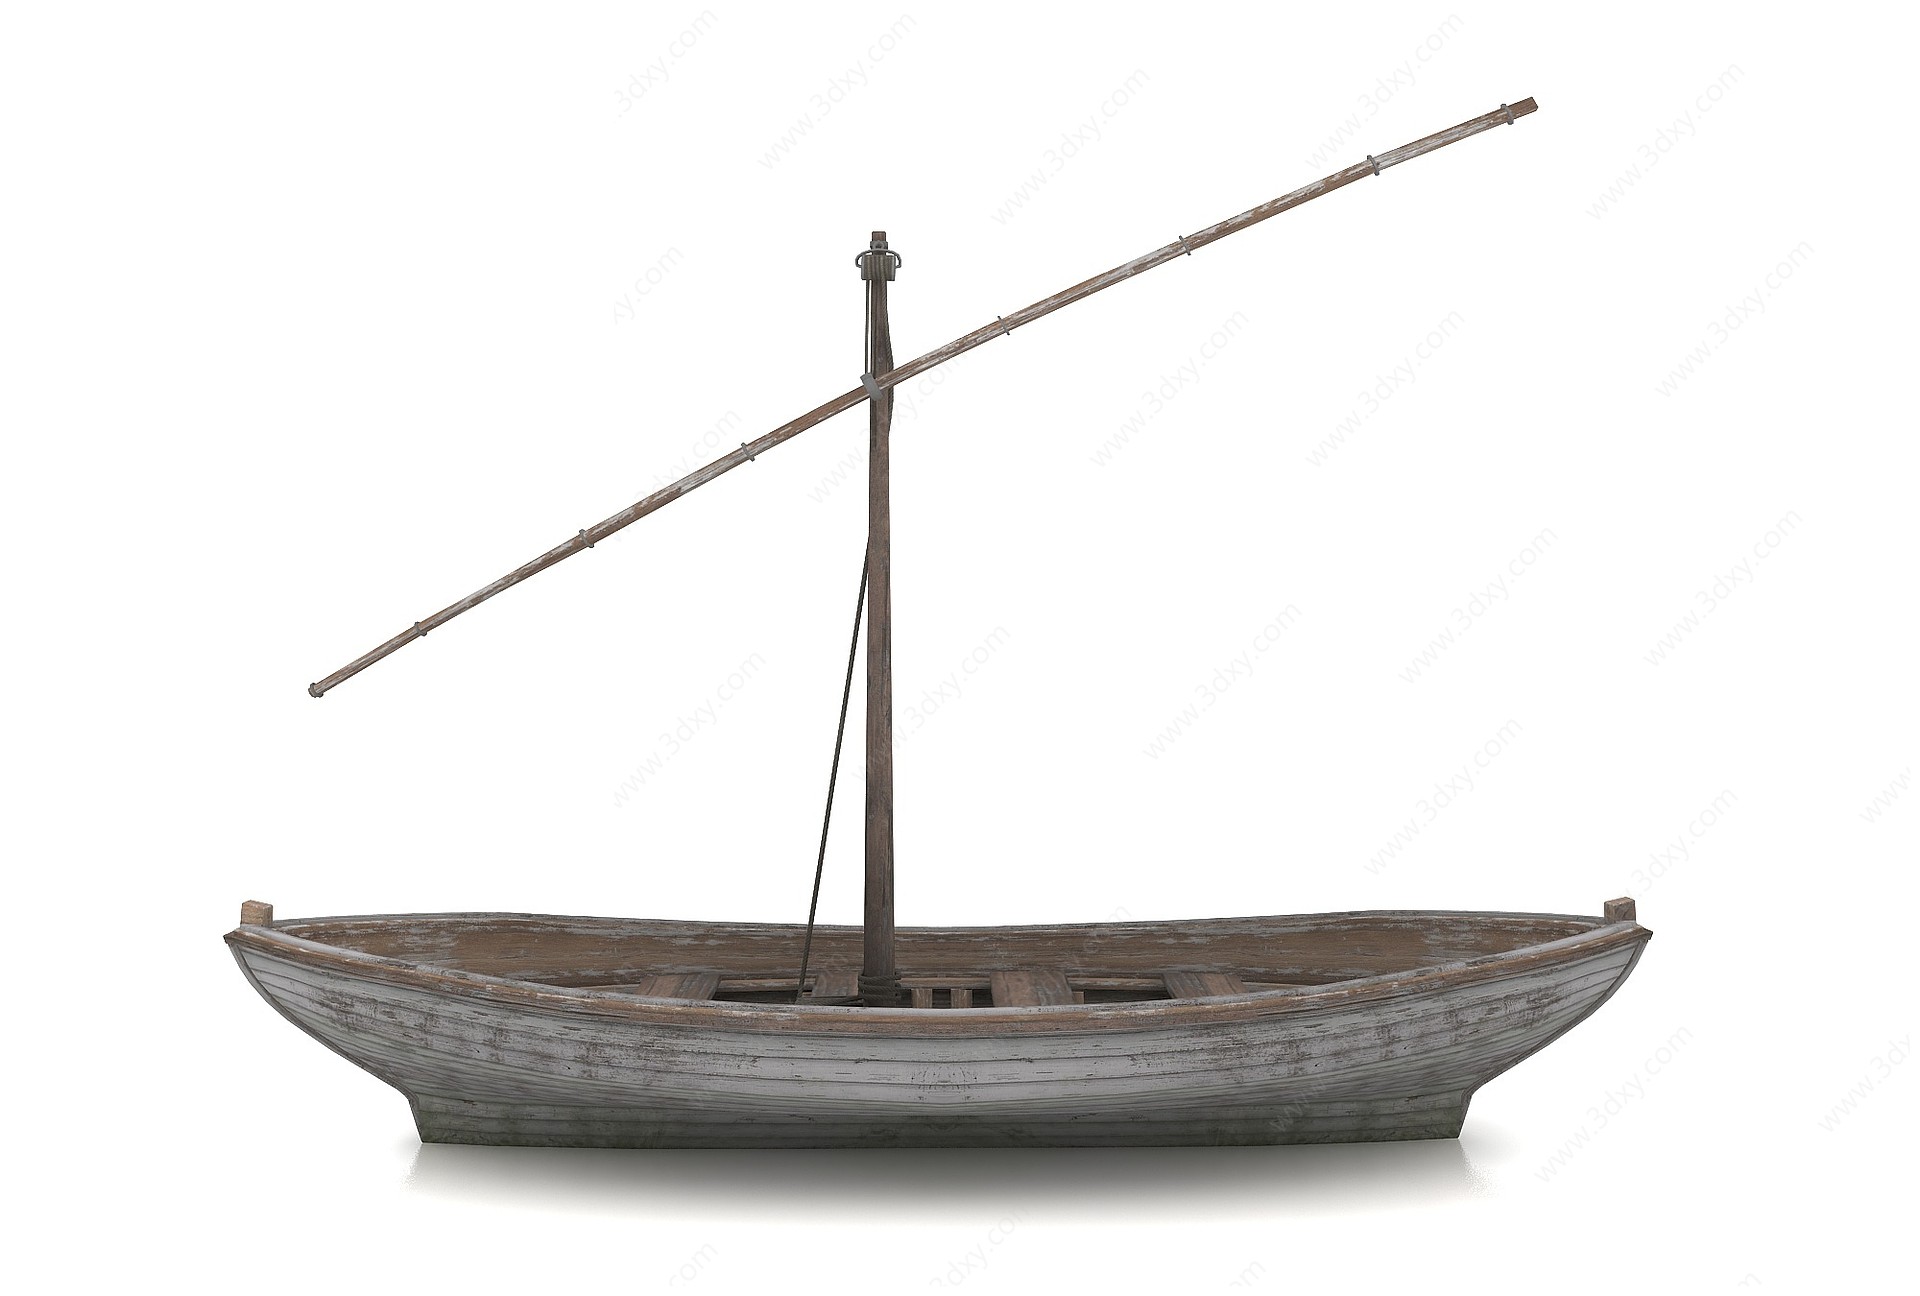 木船3D模型